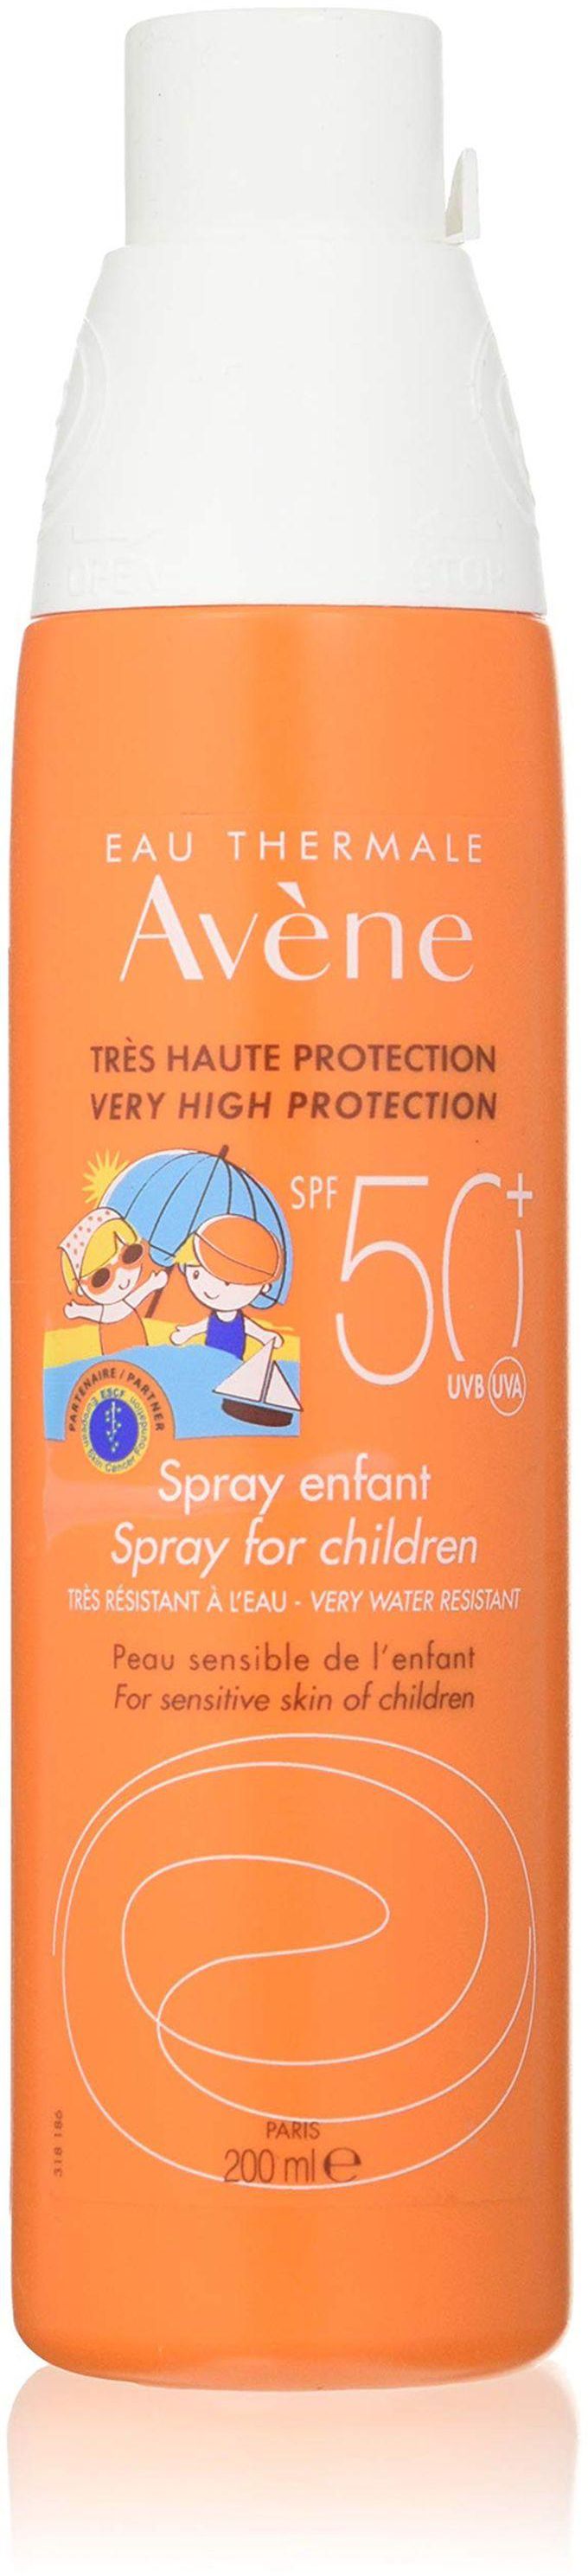 Avene Very High Protection Spray For Children SPF50 -- 200ml